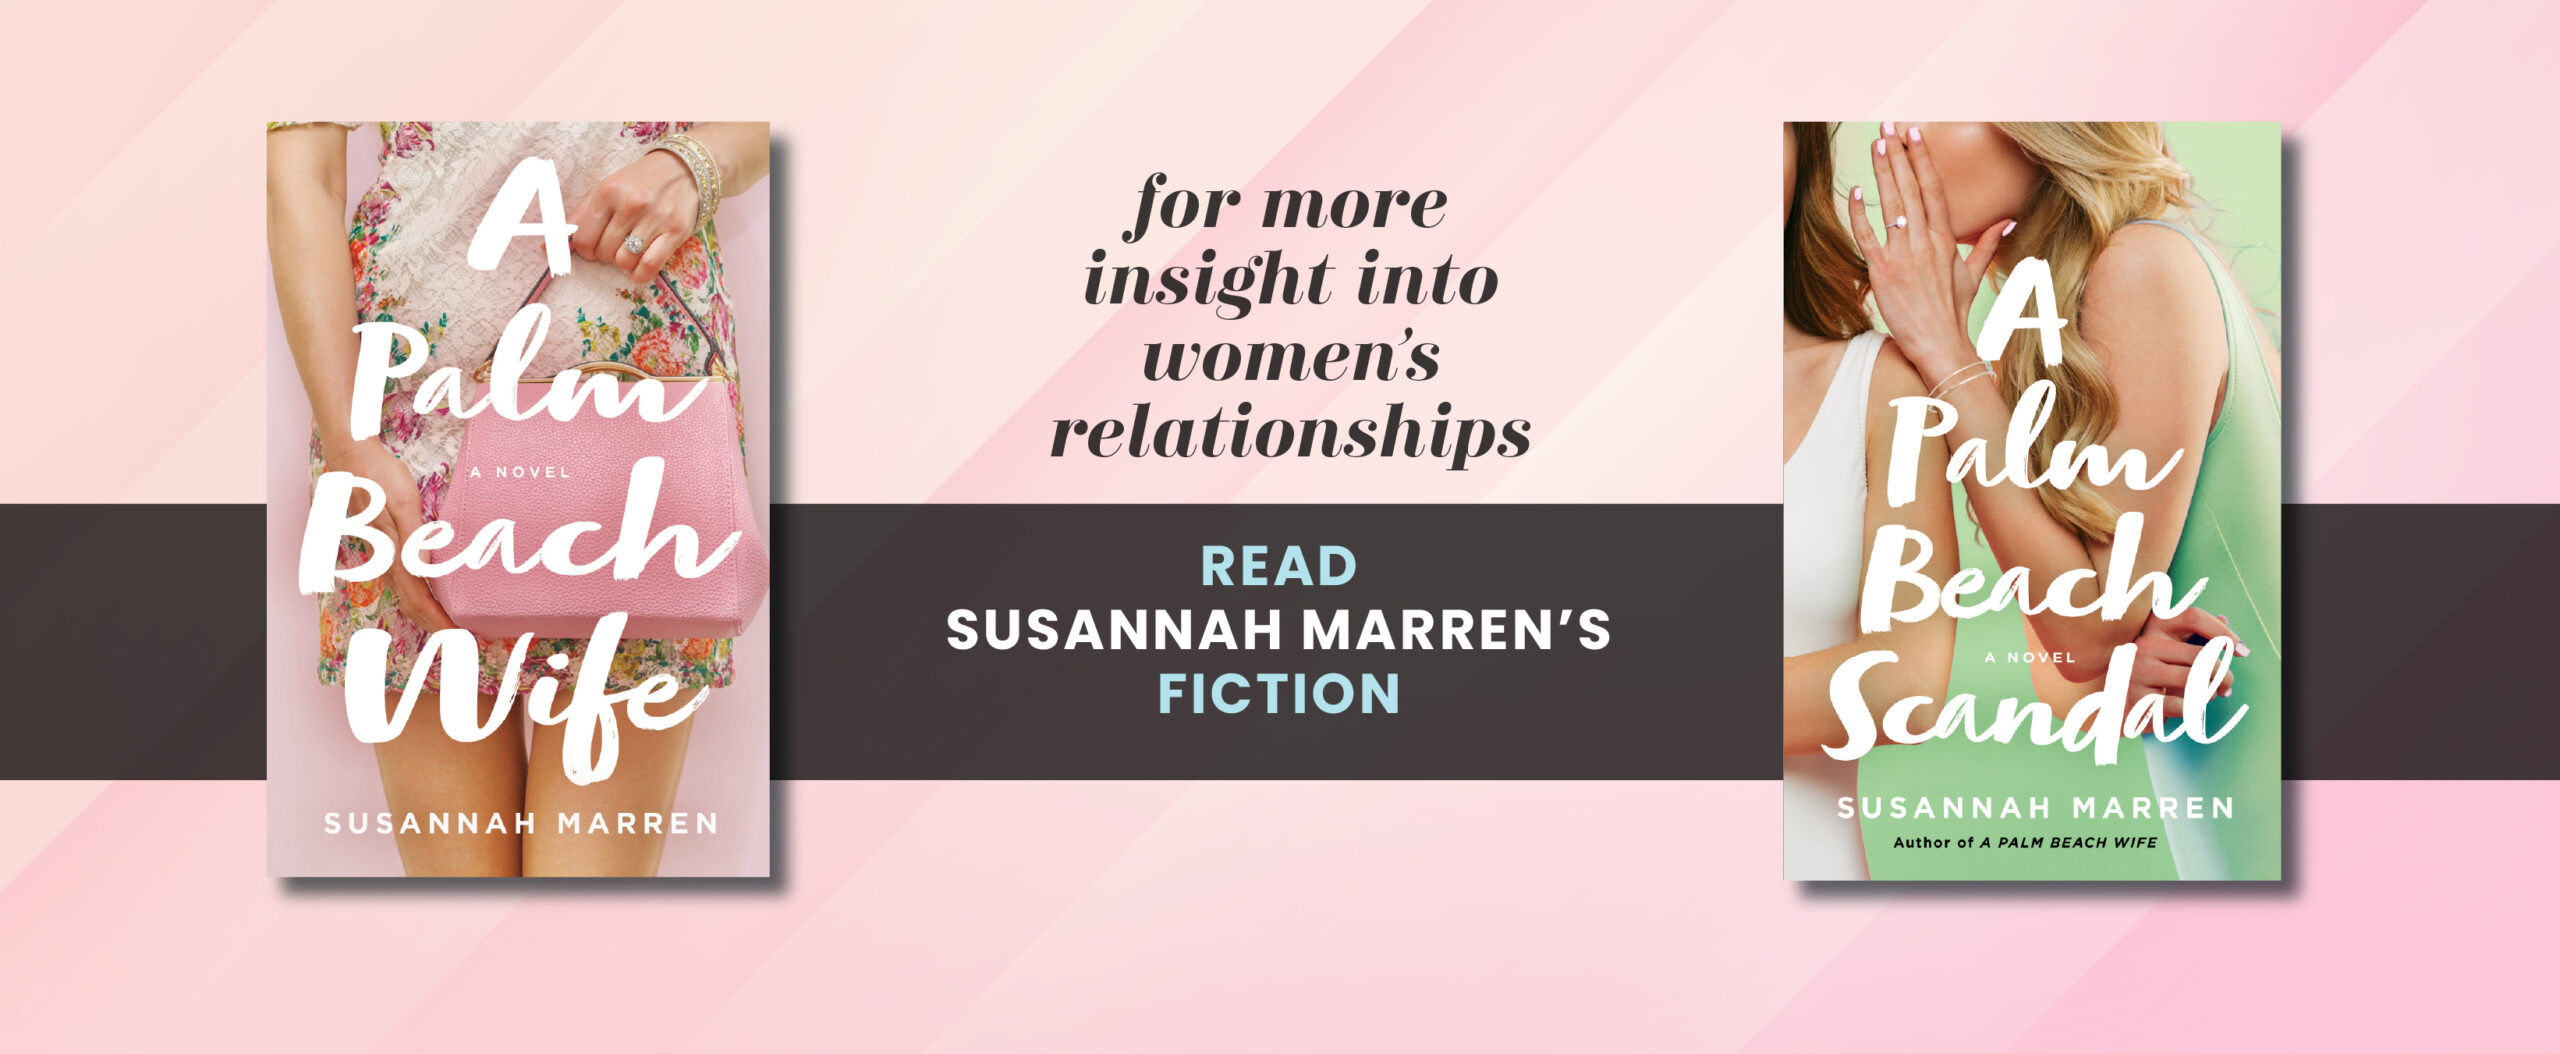 Read Susannah Marren's Fiction